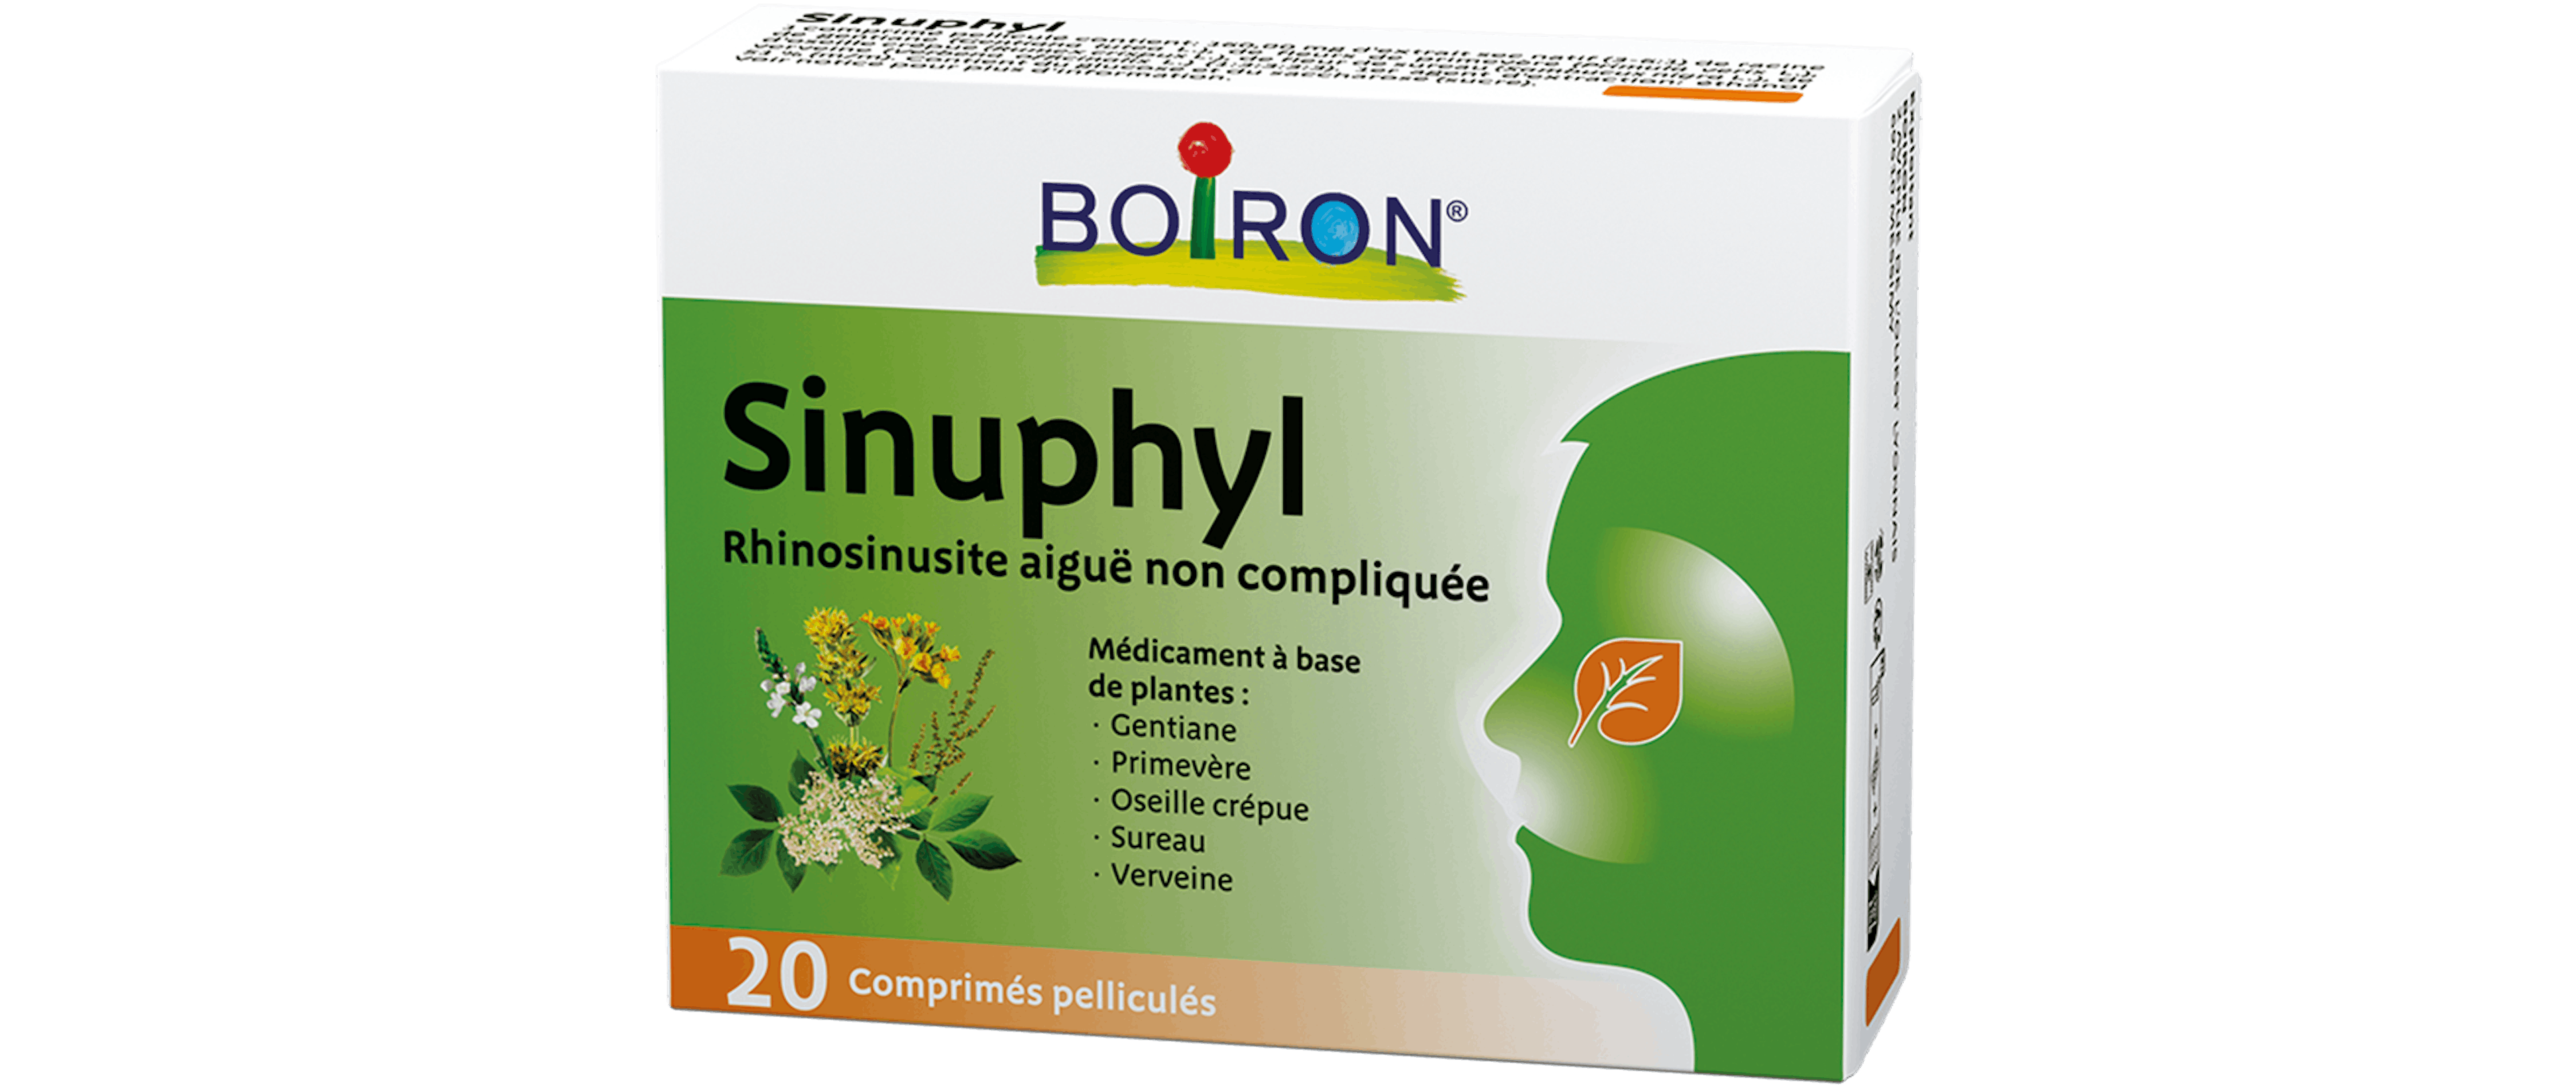 Homéopathie inflammations sinus - Sinuphyl® Boiron